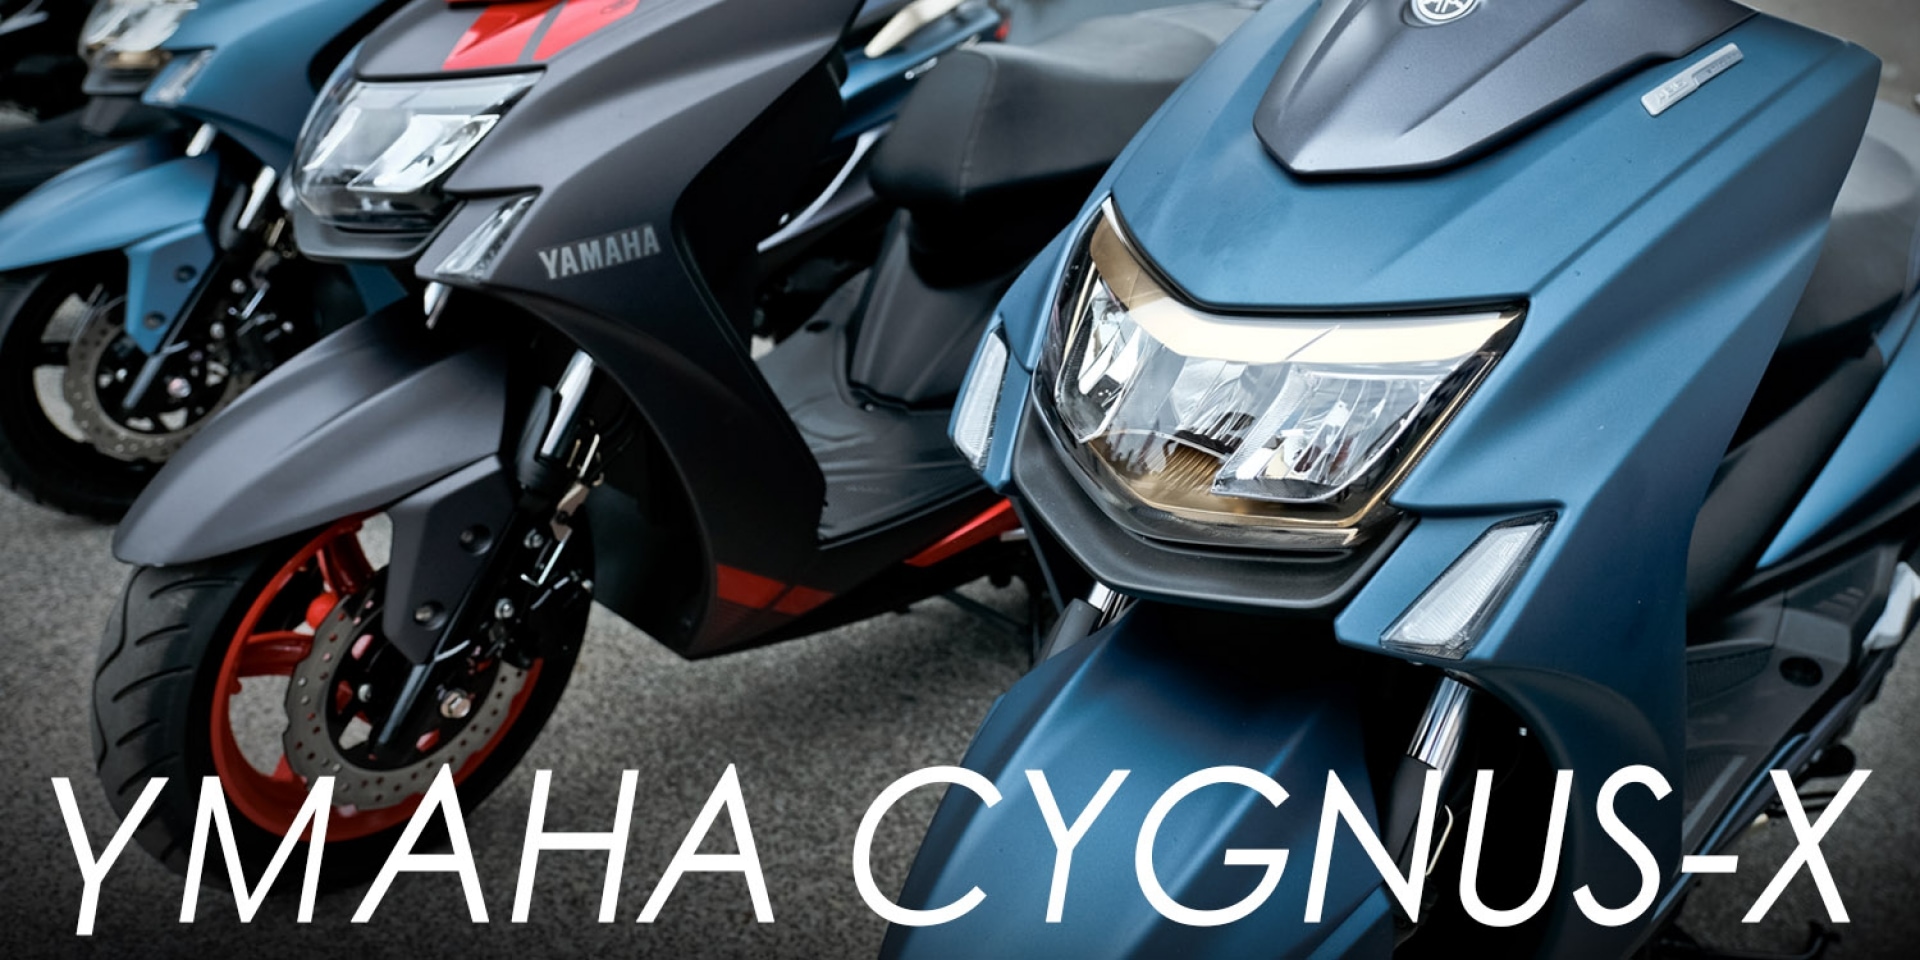 運動科技再強化。Yamaha Cygnus-X 五代勁戰媒體試乘會